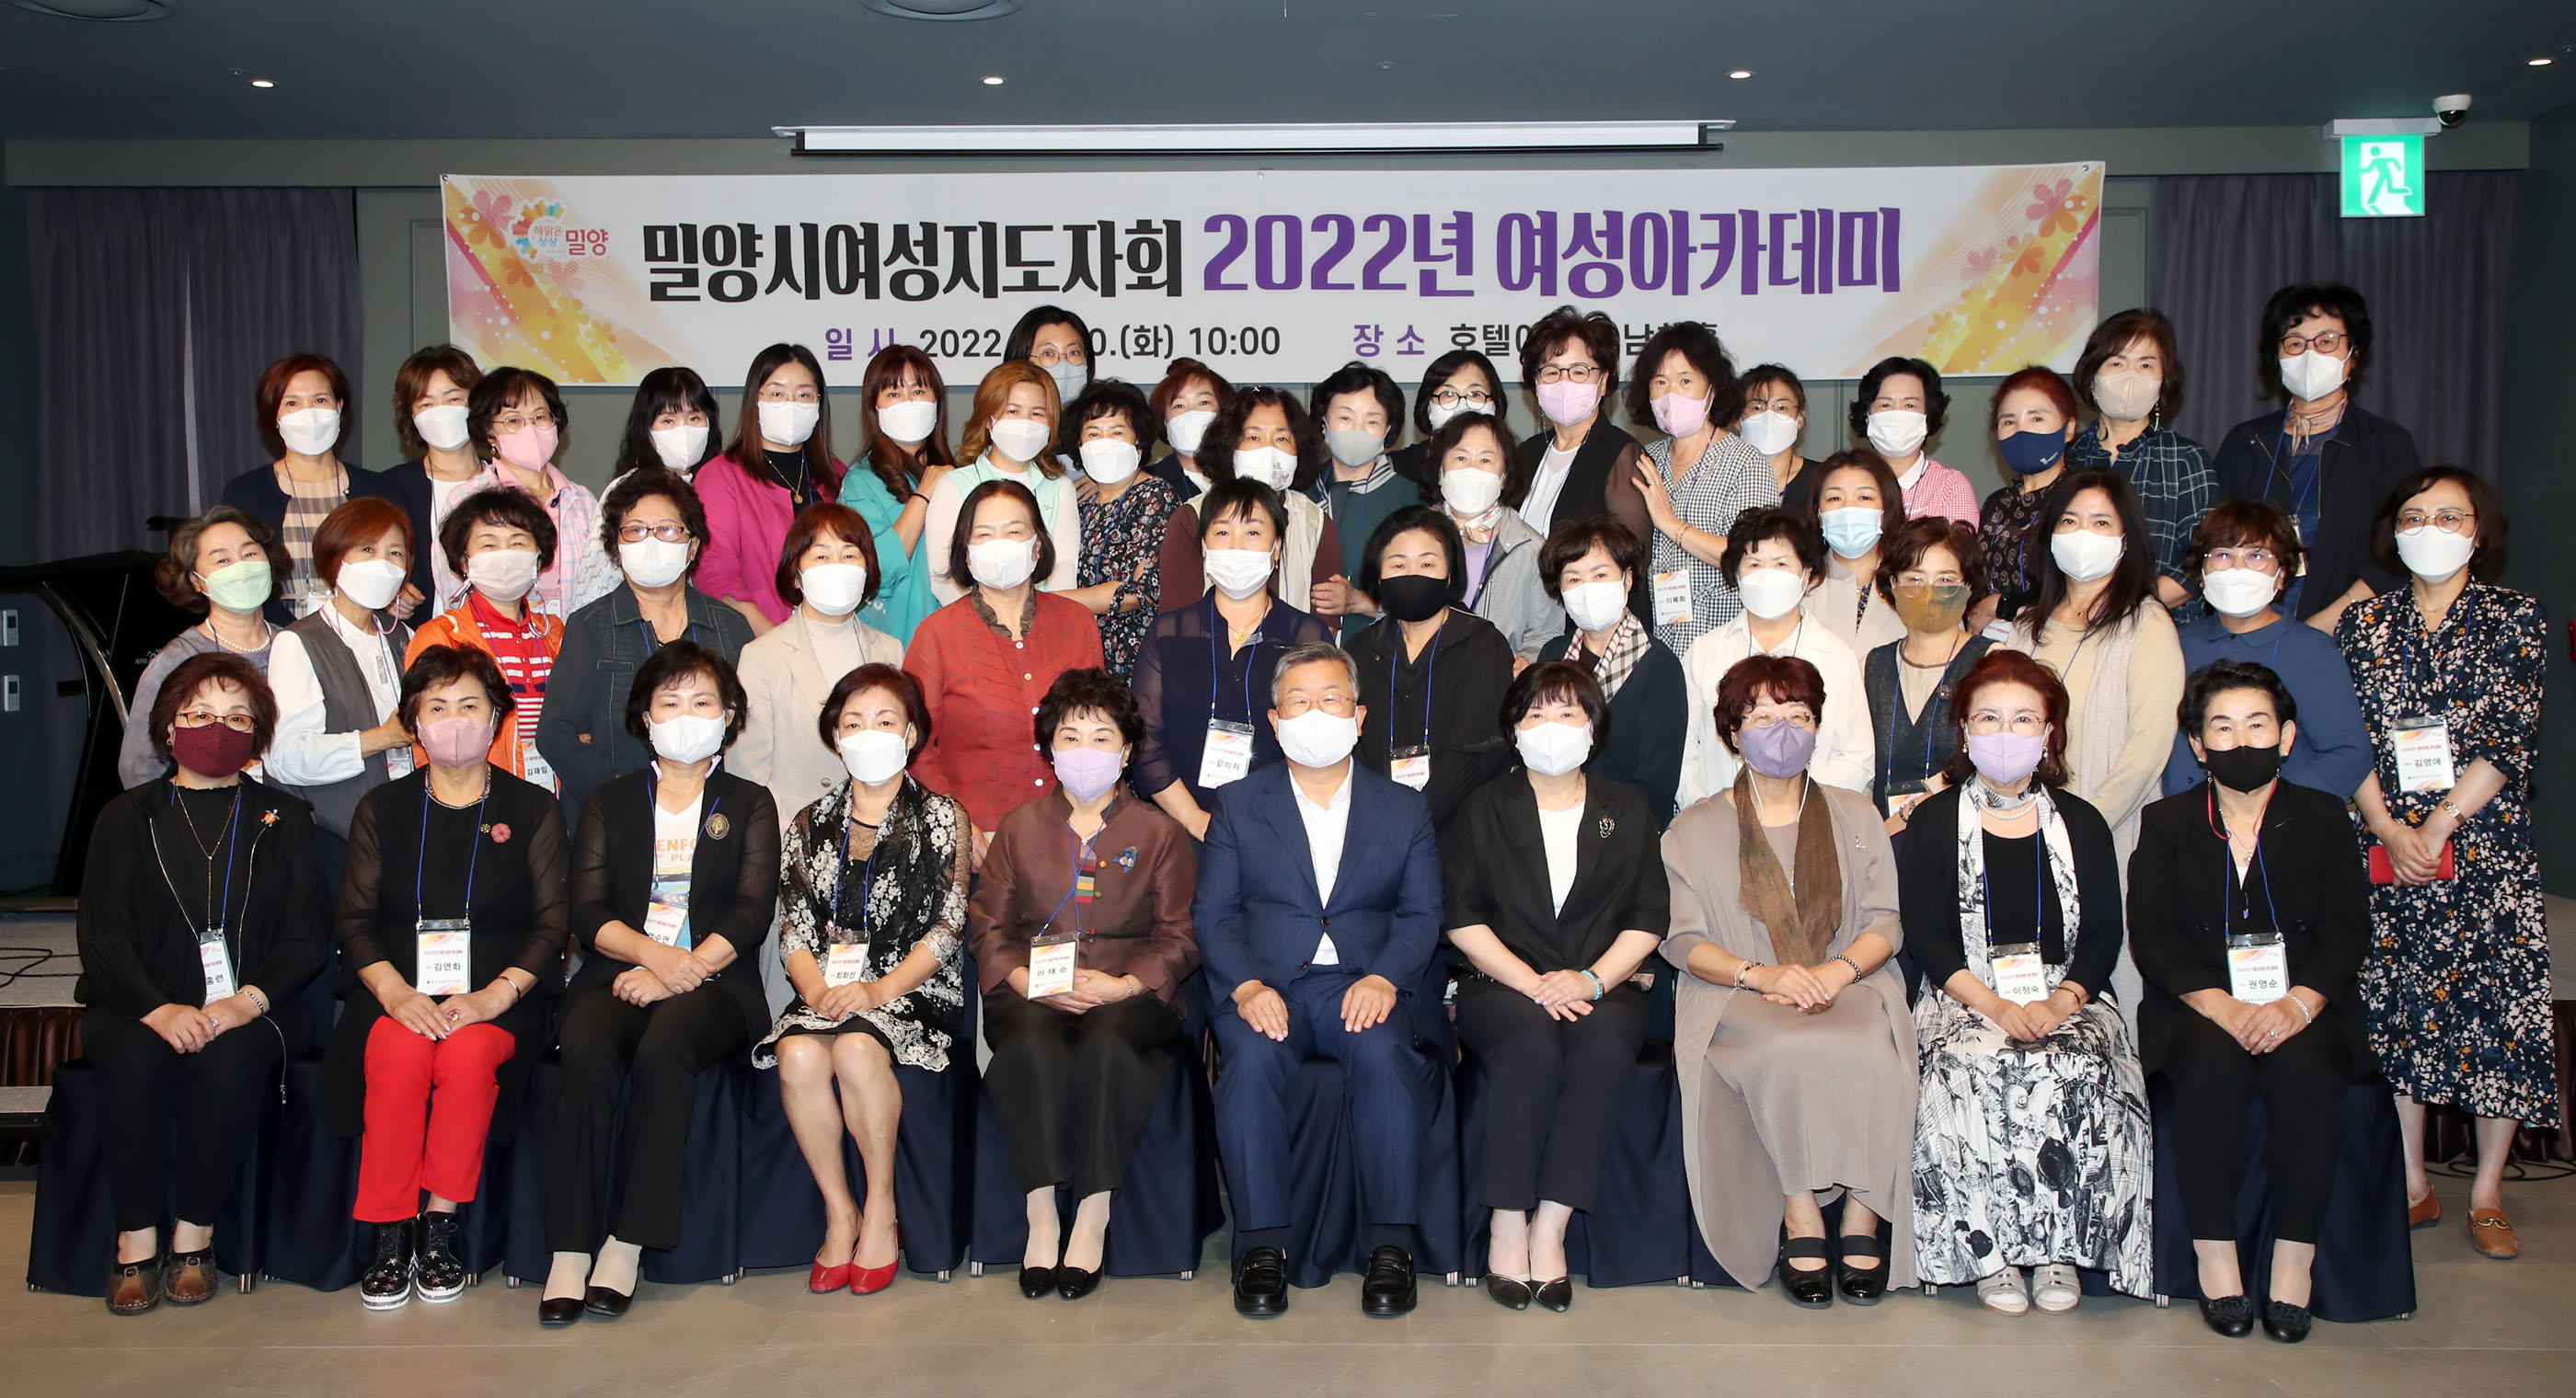 20220920-2022 여성아카데미 개최 (1).JPG